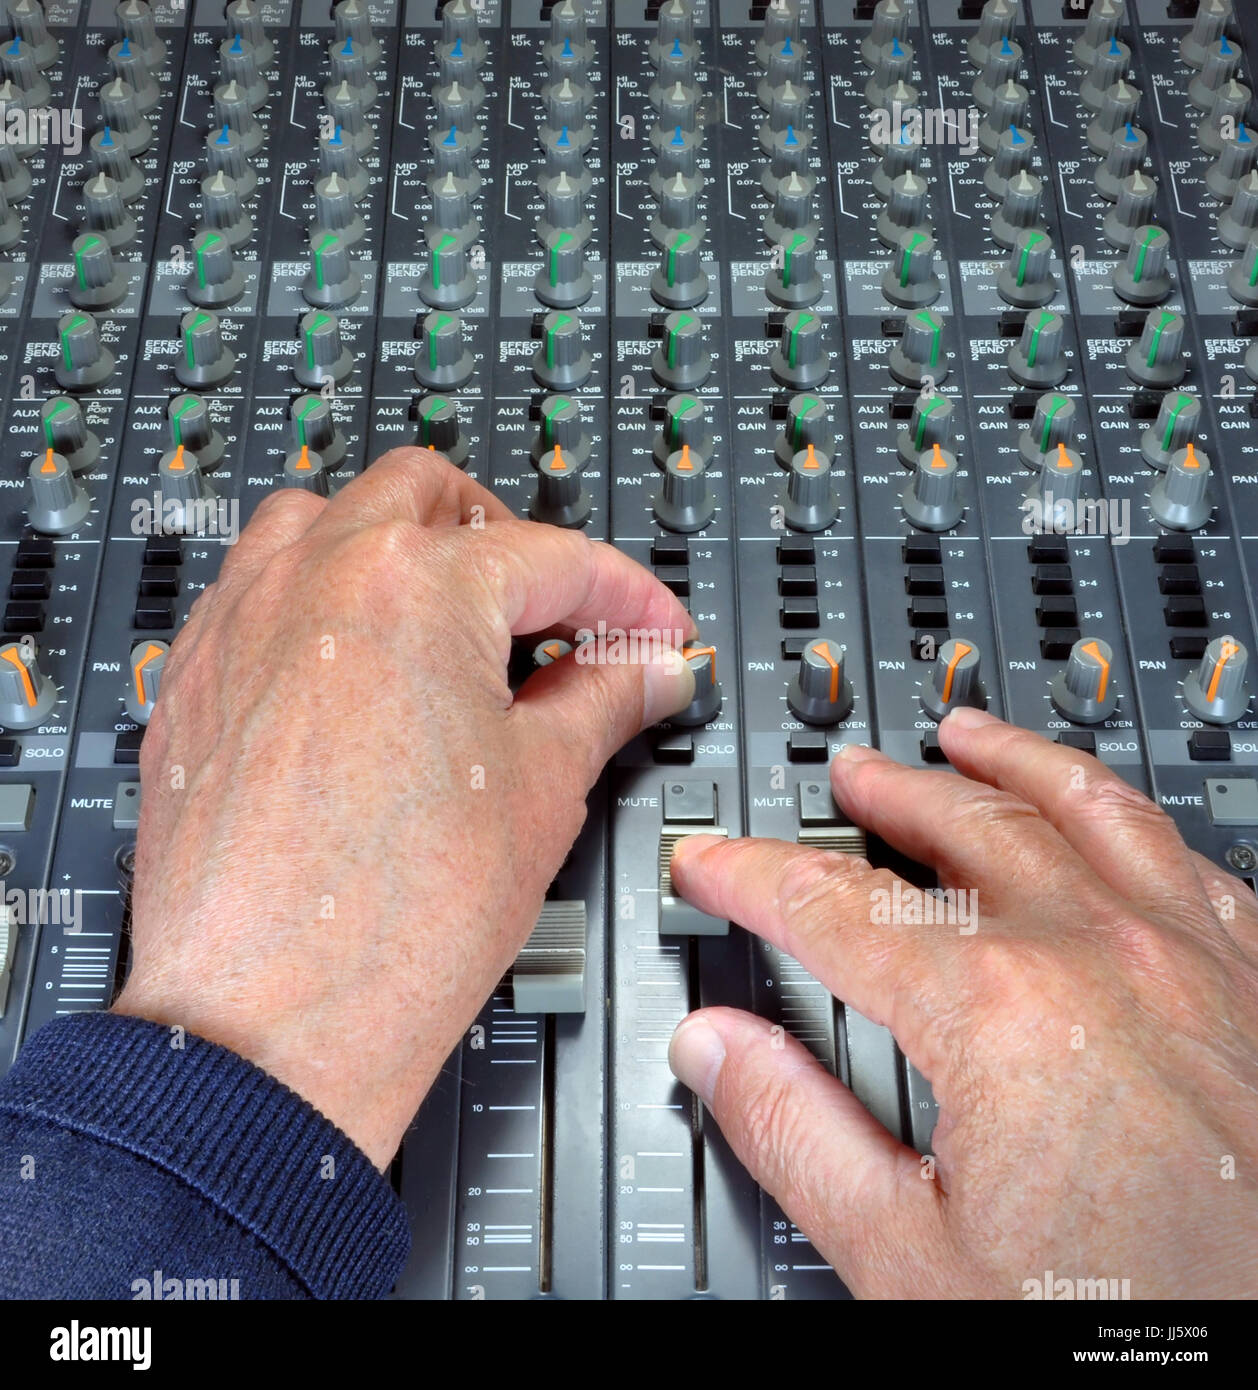 Manos expertas utilizando los deslizadores, los botones y diales analógicos en una mesa de mezclas y grabaciones de música en un estudio. Foto de stock